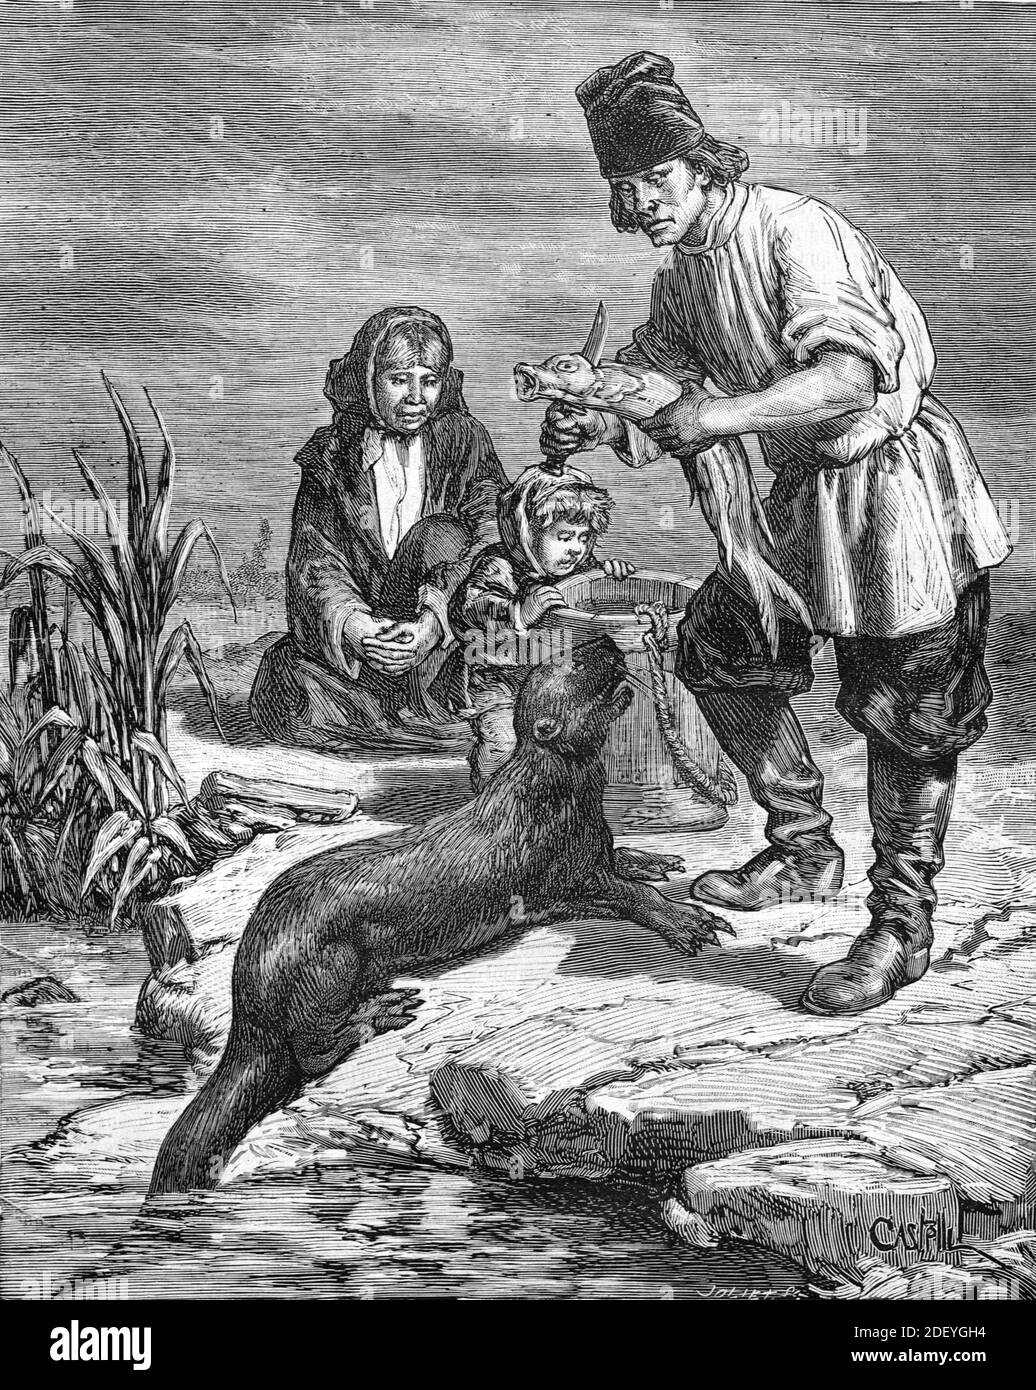 Pêcheur nourrissant de la Tame Otter, probablement une North American River Otter, Lontra canadensis, avec du poisson frais aux États-Unis, aux États-Unis ou aux États-Unis (Engr Castelli, 1884) gravure ou illustration d'époque Banque D'Images